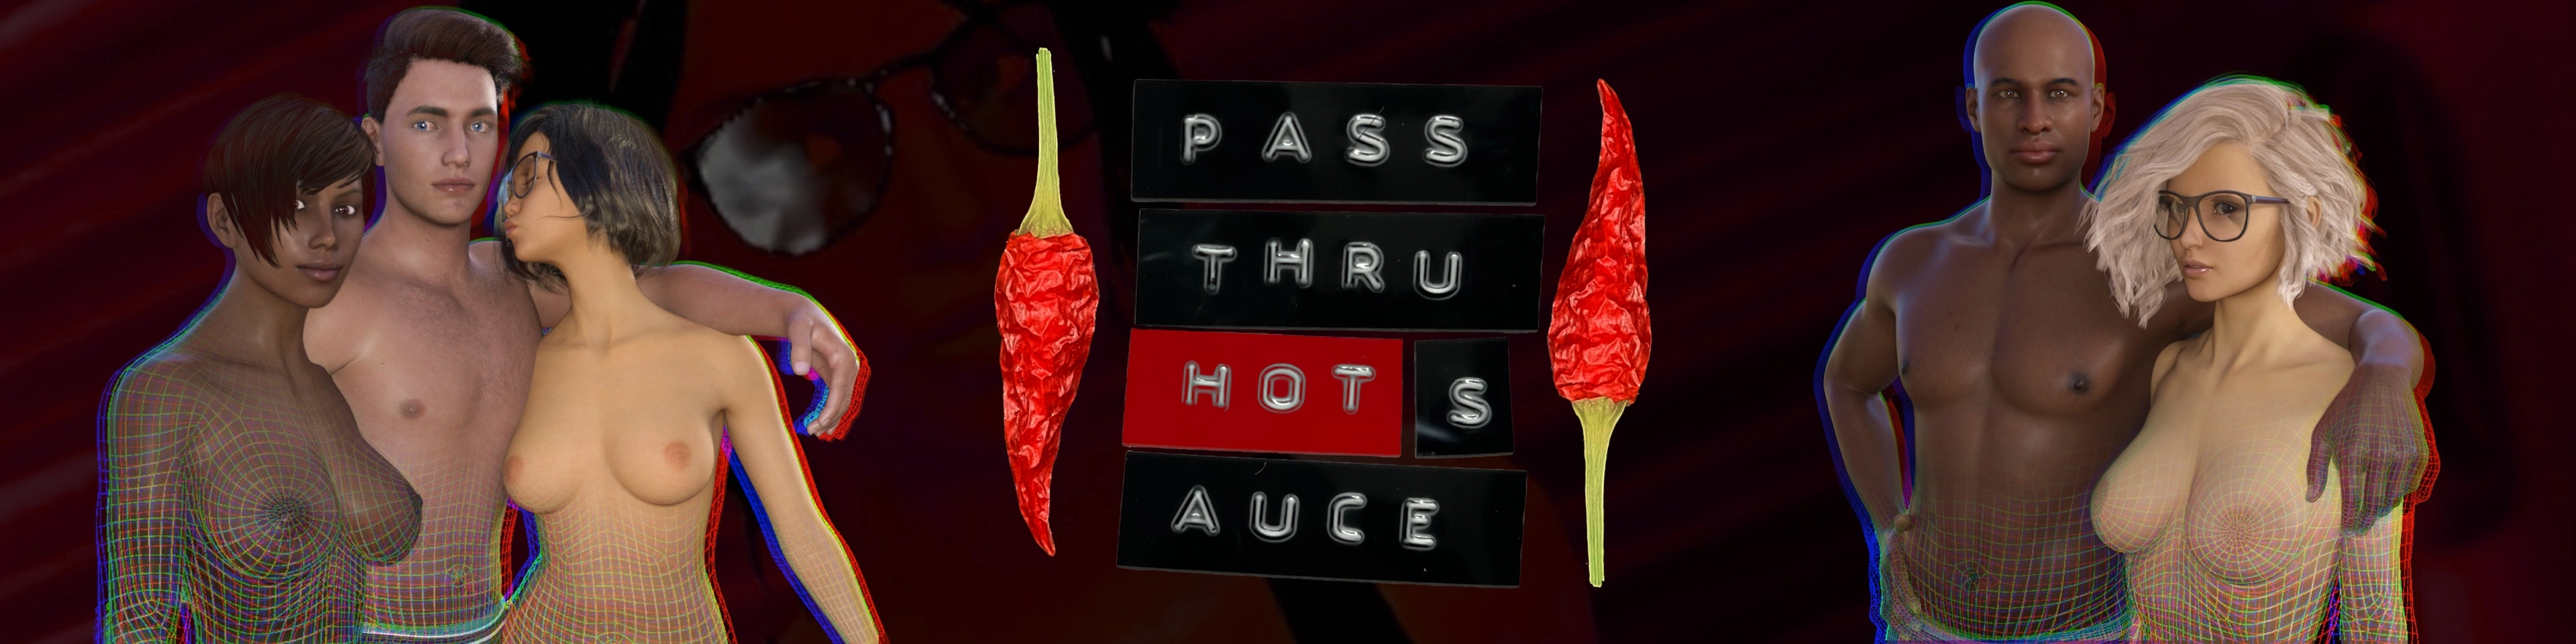 Pass Thru Hot Sauce main image